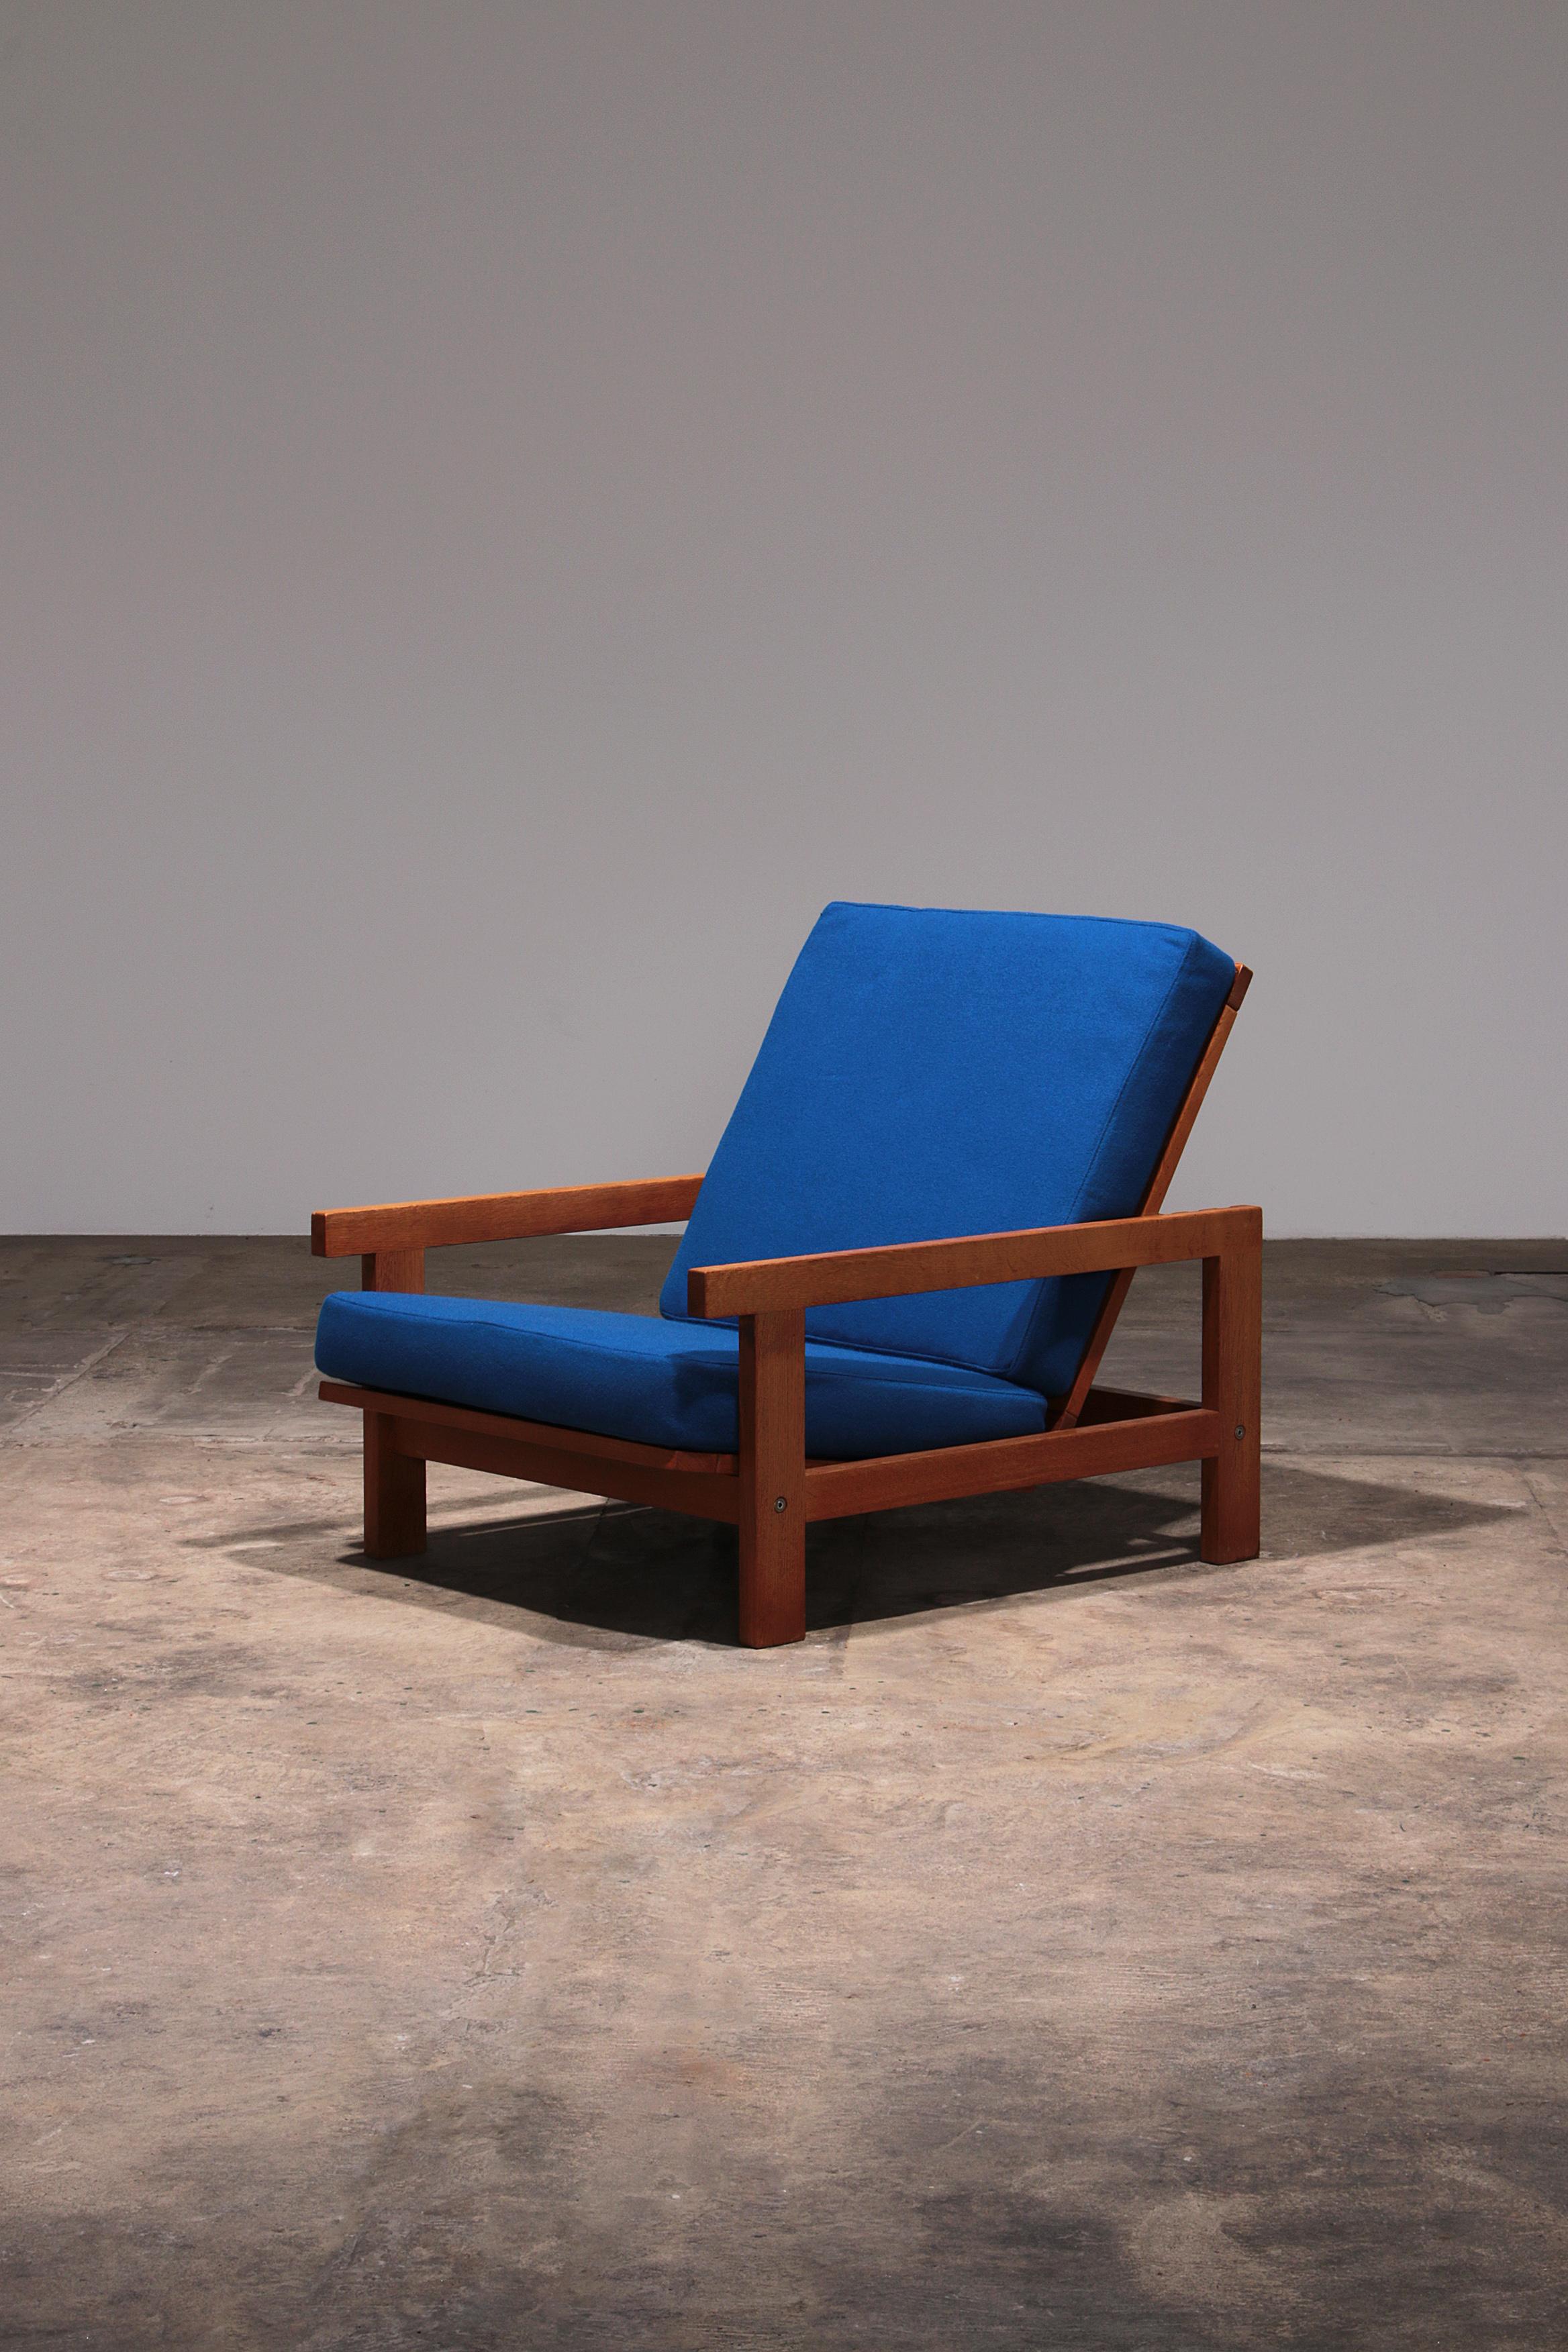 Hans J Wegner GE421 Getama Sessel aus Eiche Relax mit verstellbarer Rückenlehne

Entdecken Sie die perfekte Kombination aus Stil und Komfort mit dem Hans J Wegner GE421 Getama Relax-Sessel. Dieser ikonische Eichenstuhl aus den 1970er Jahren ist